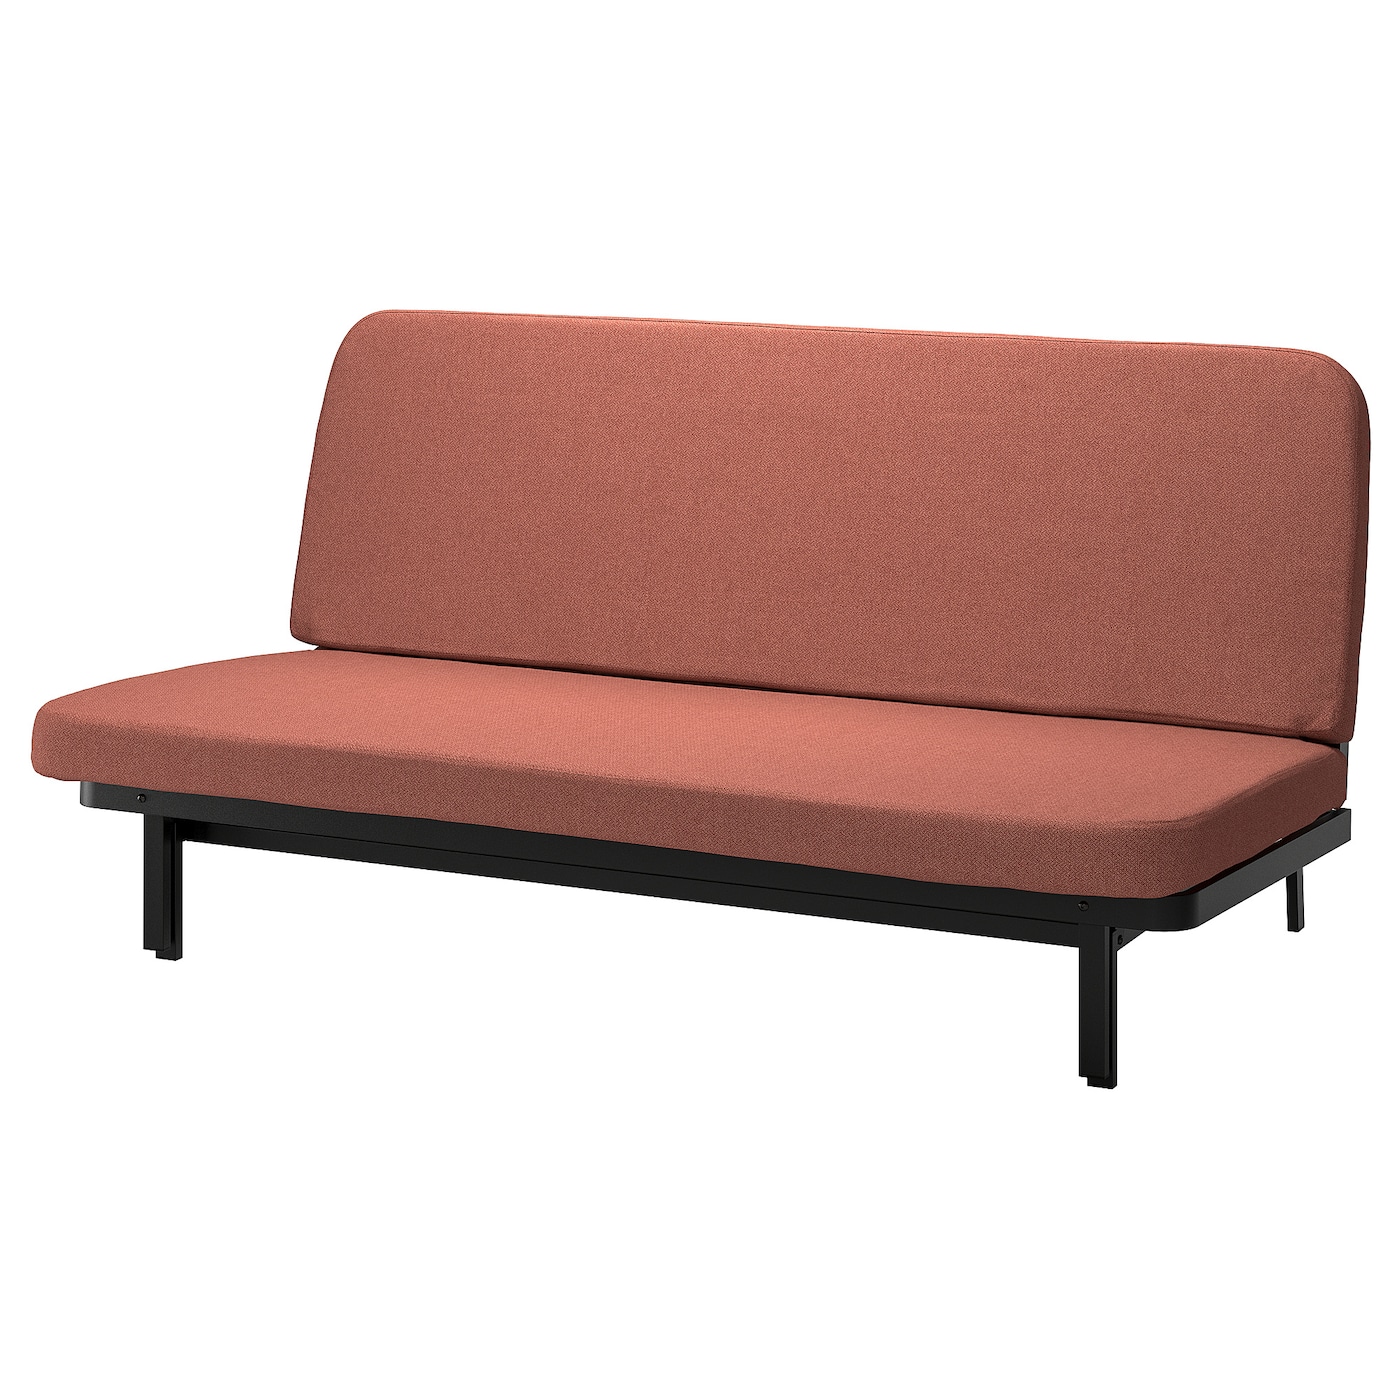 NYHAMN 3-местный диван-кровать, поролоновый матрас в комплекте/Скартофта красный/коричневый IKEA